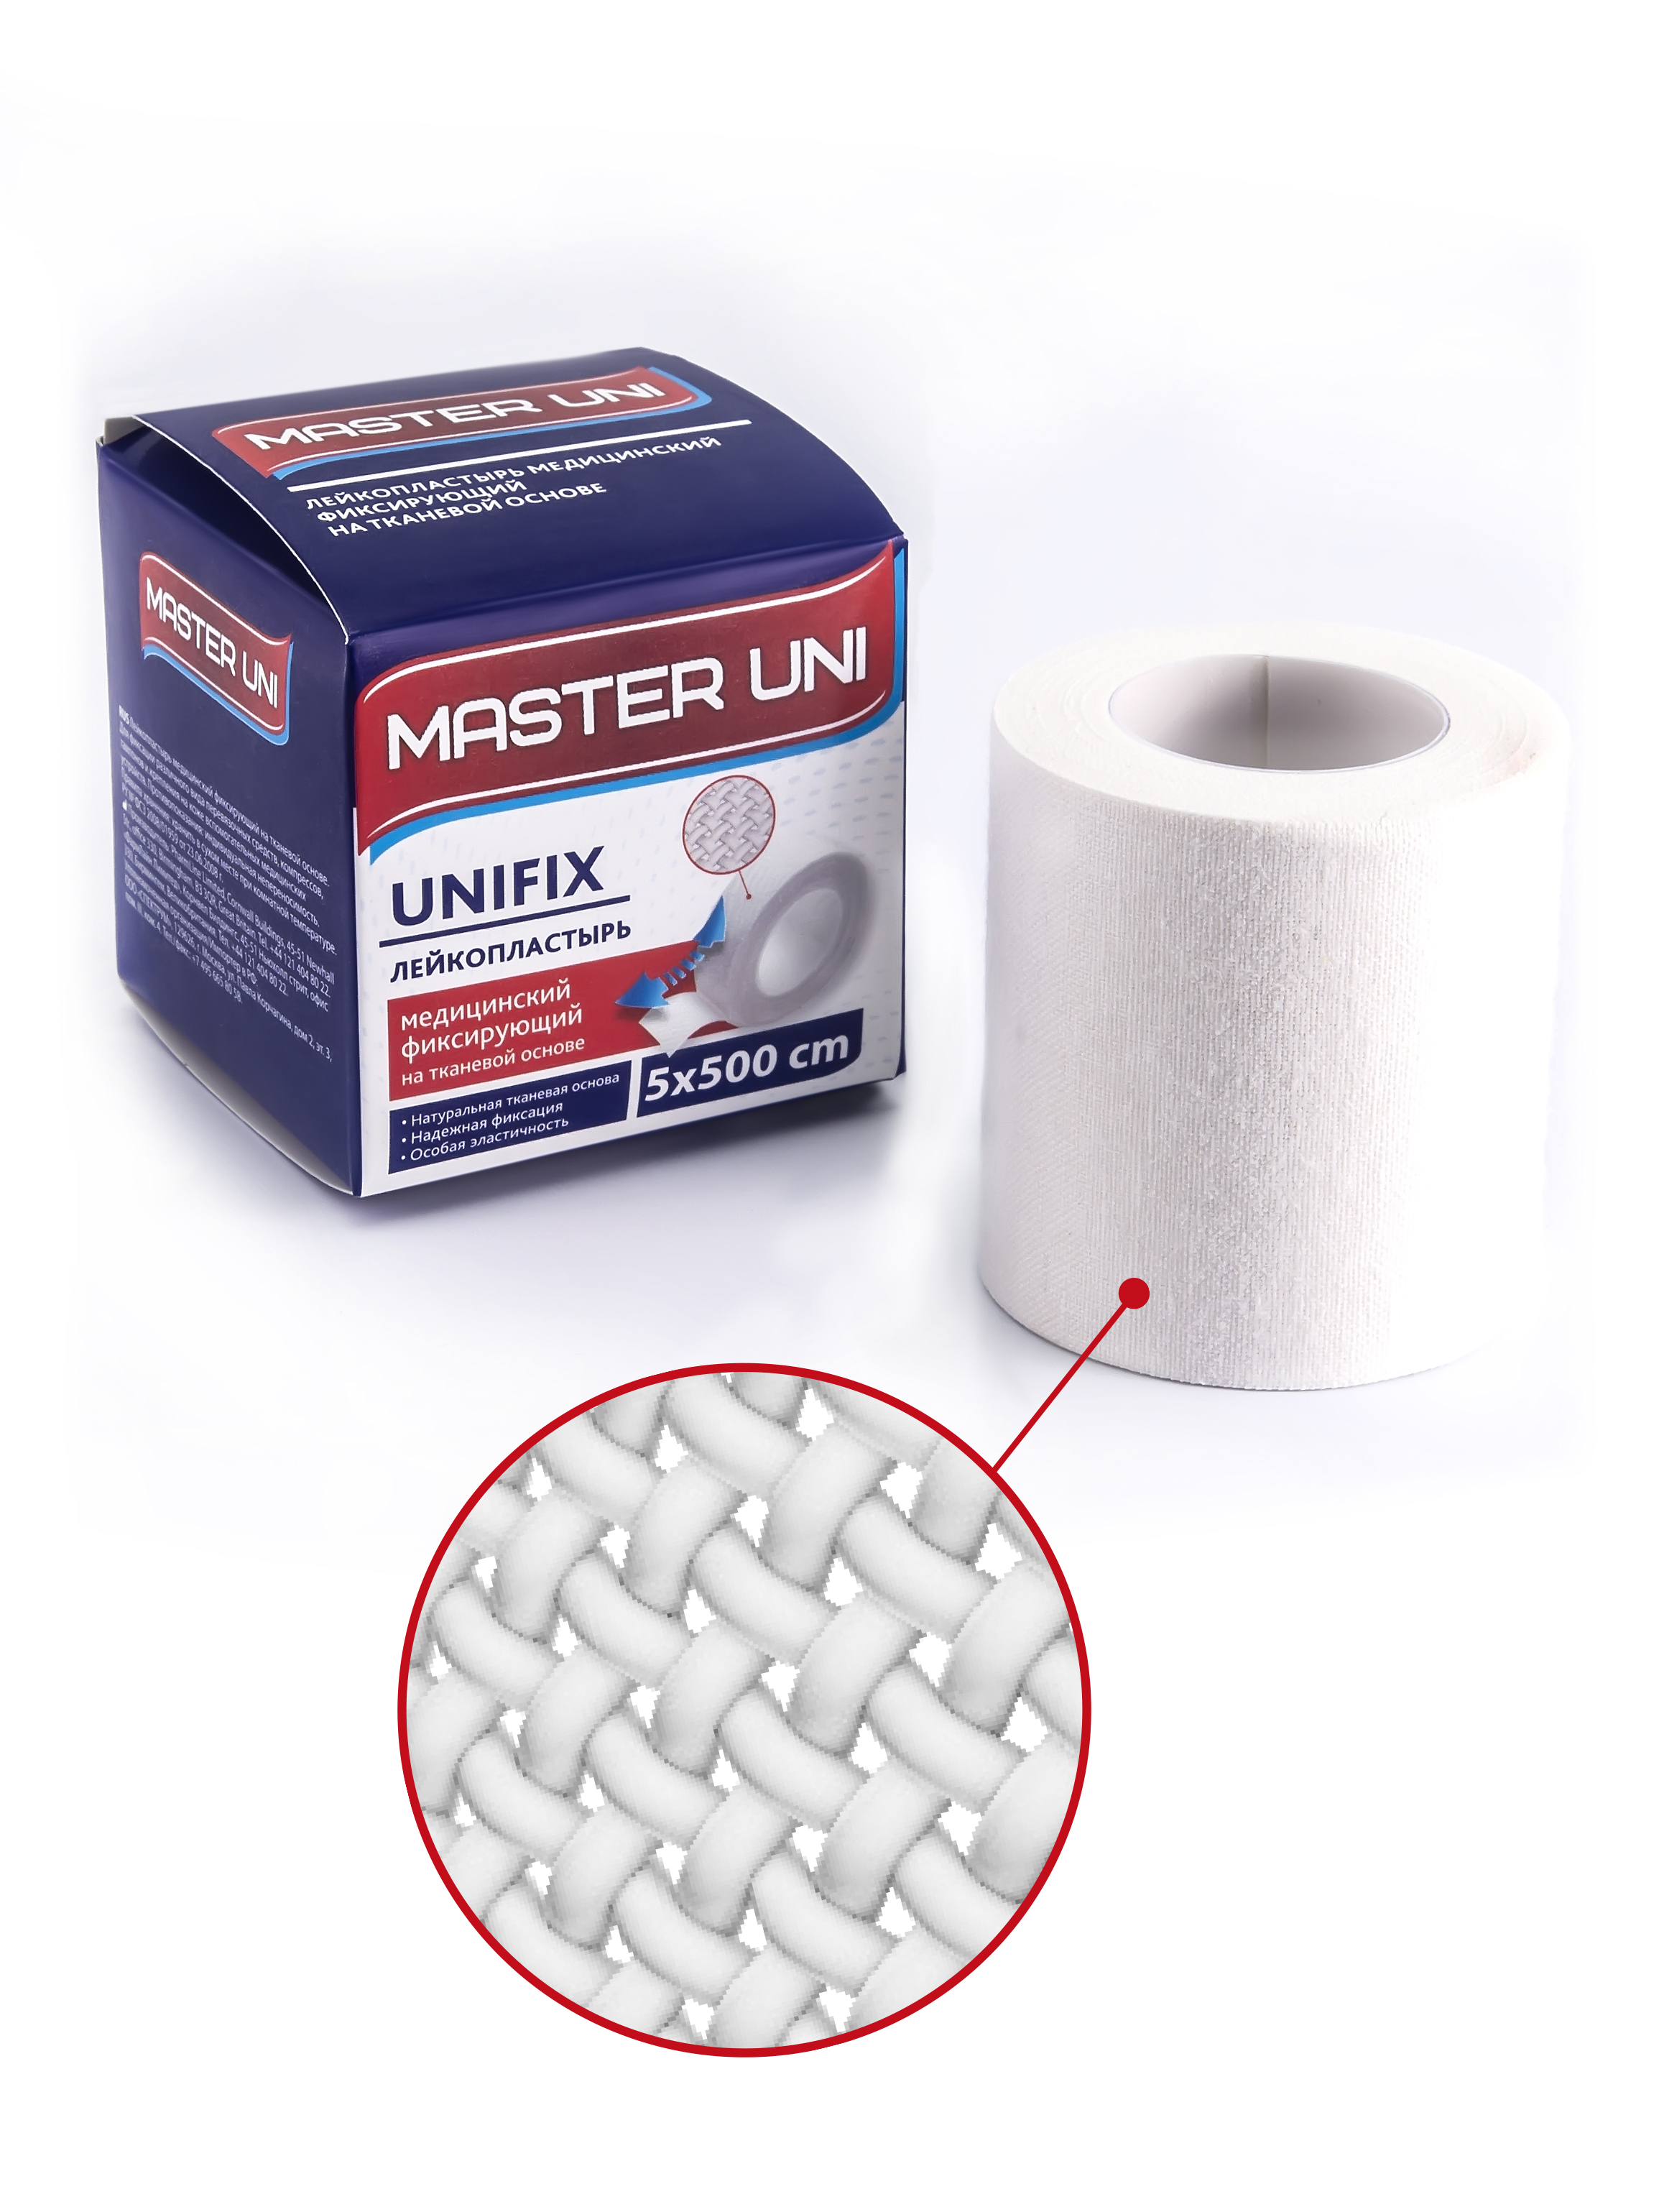 Купить UNIFIX Лейкопластырь 5 х 500 см на тканевой основе, Пластырь Master Uni Unifix фиксирующий на тканевой основе 5 х 500 см, белый